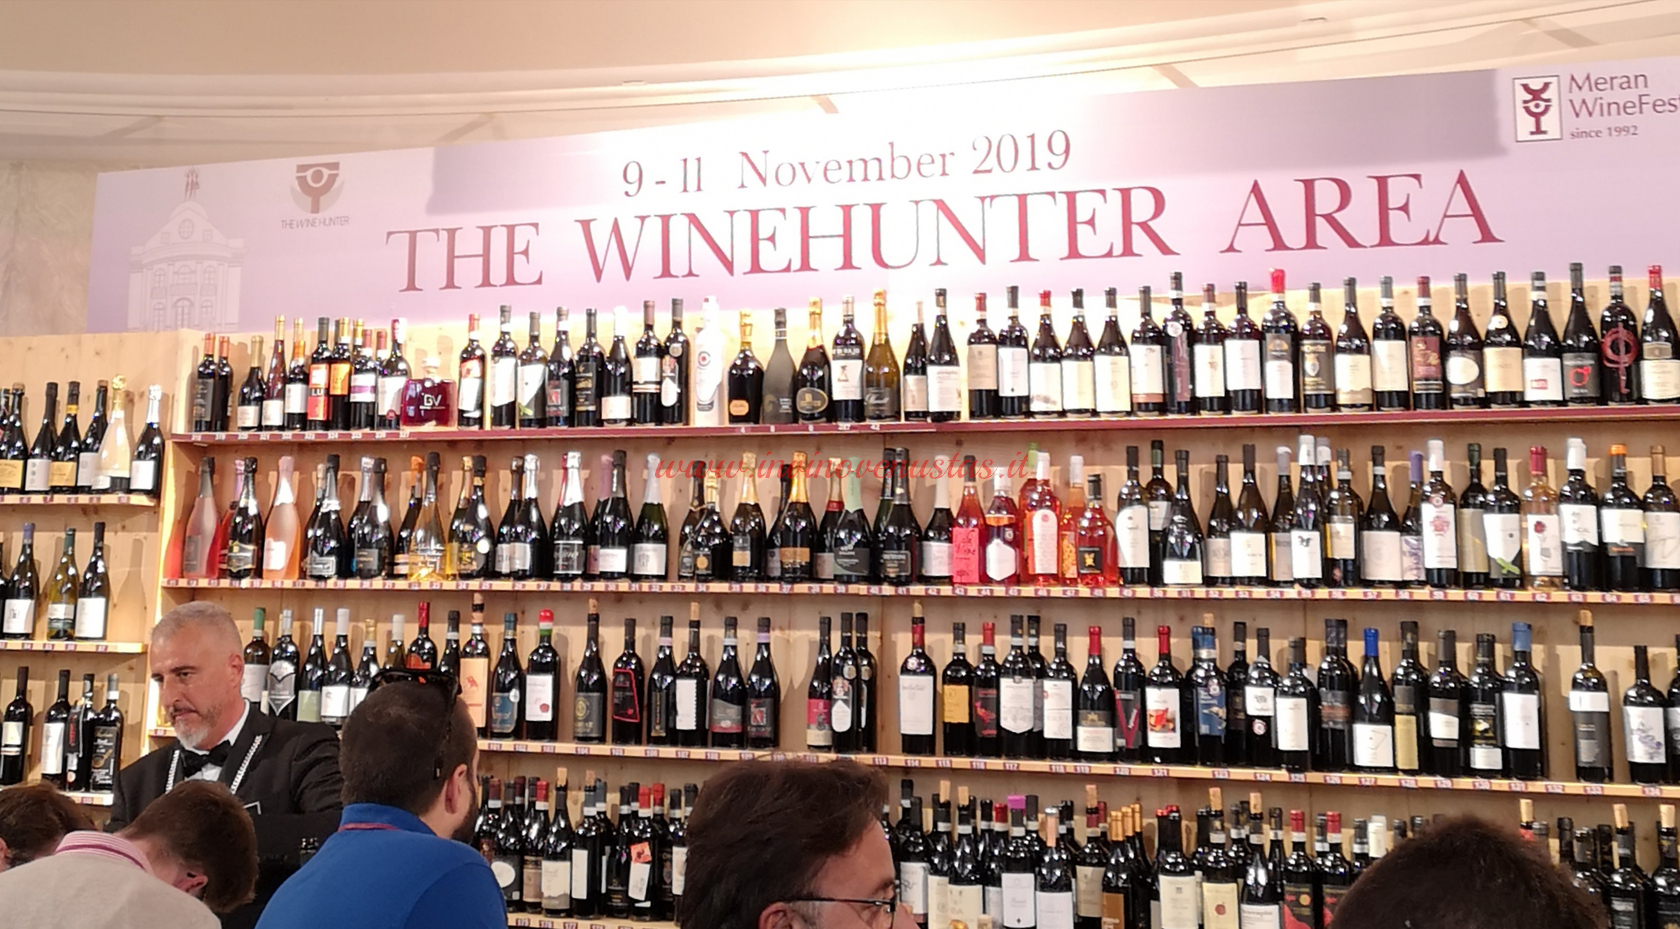 The WineHunter area Merano Wine Festival 2019